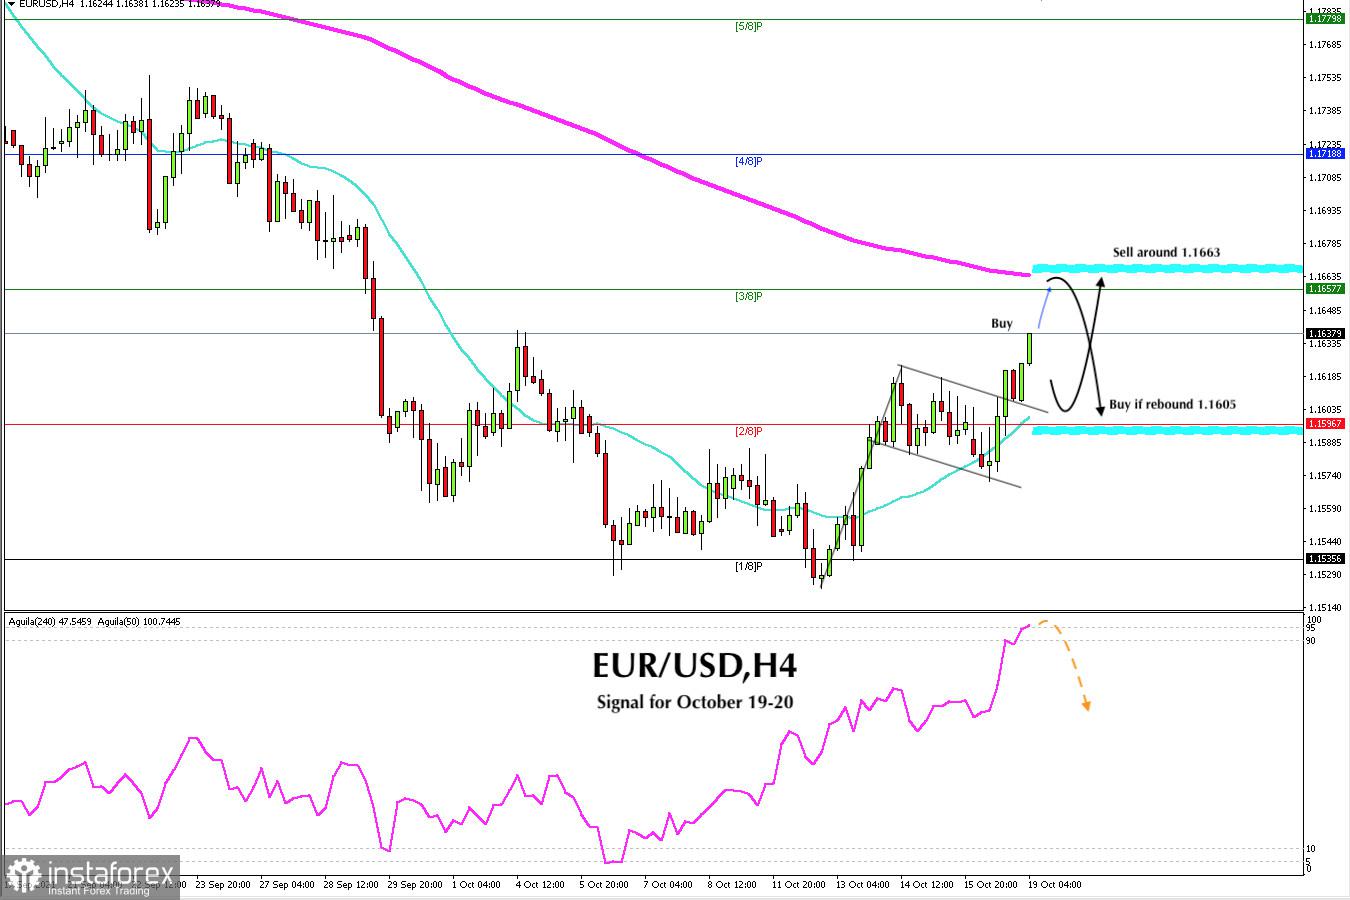 Sinyal trading untuk EUR/USD pada 19 - 20 Oktober 2021: Jual di bawah 1.1670 (EMA 200)